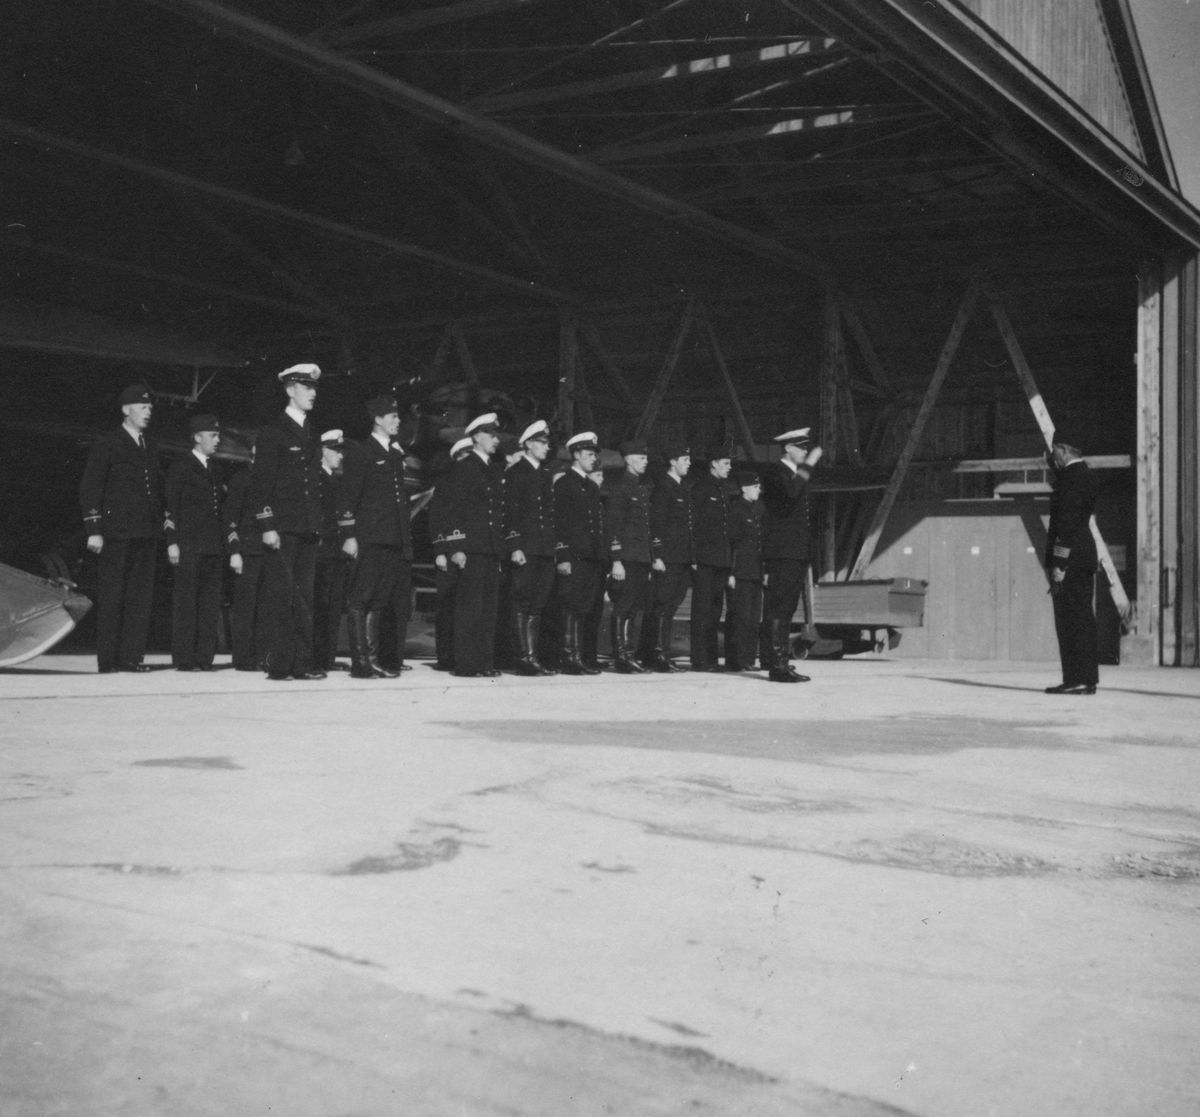 Chefen för F 2 Roslagens flygflottilj, Herman Sundin, inspekterar marinspaningskursen på Fårösund, 1938. Hälsning av manskap vid hangar.